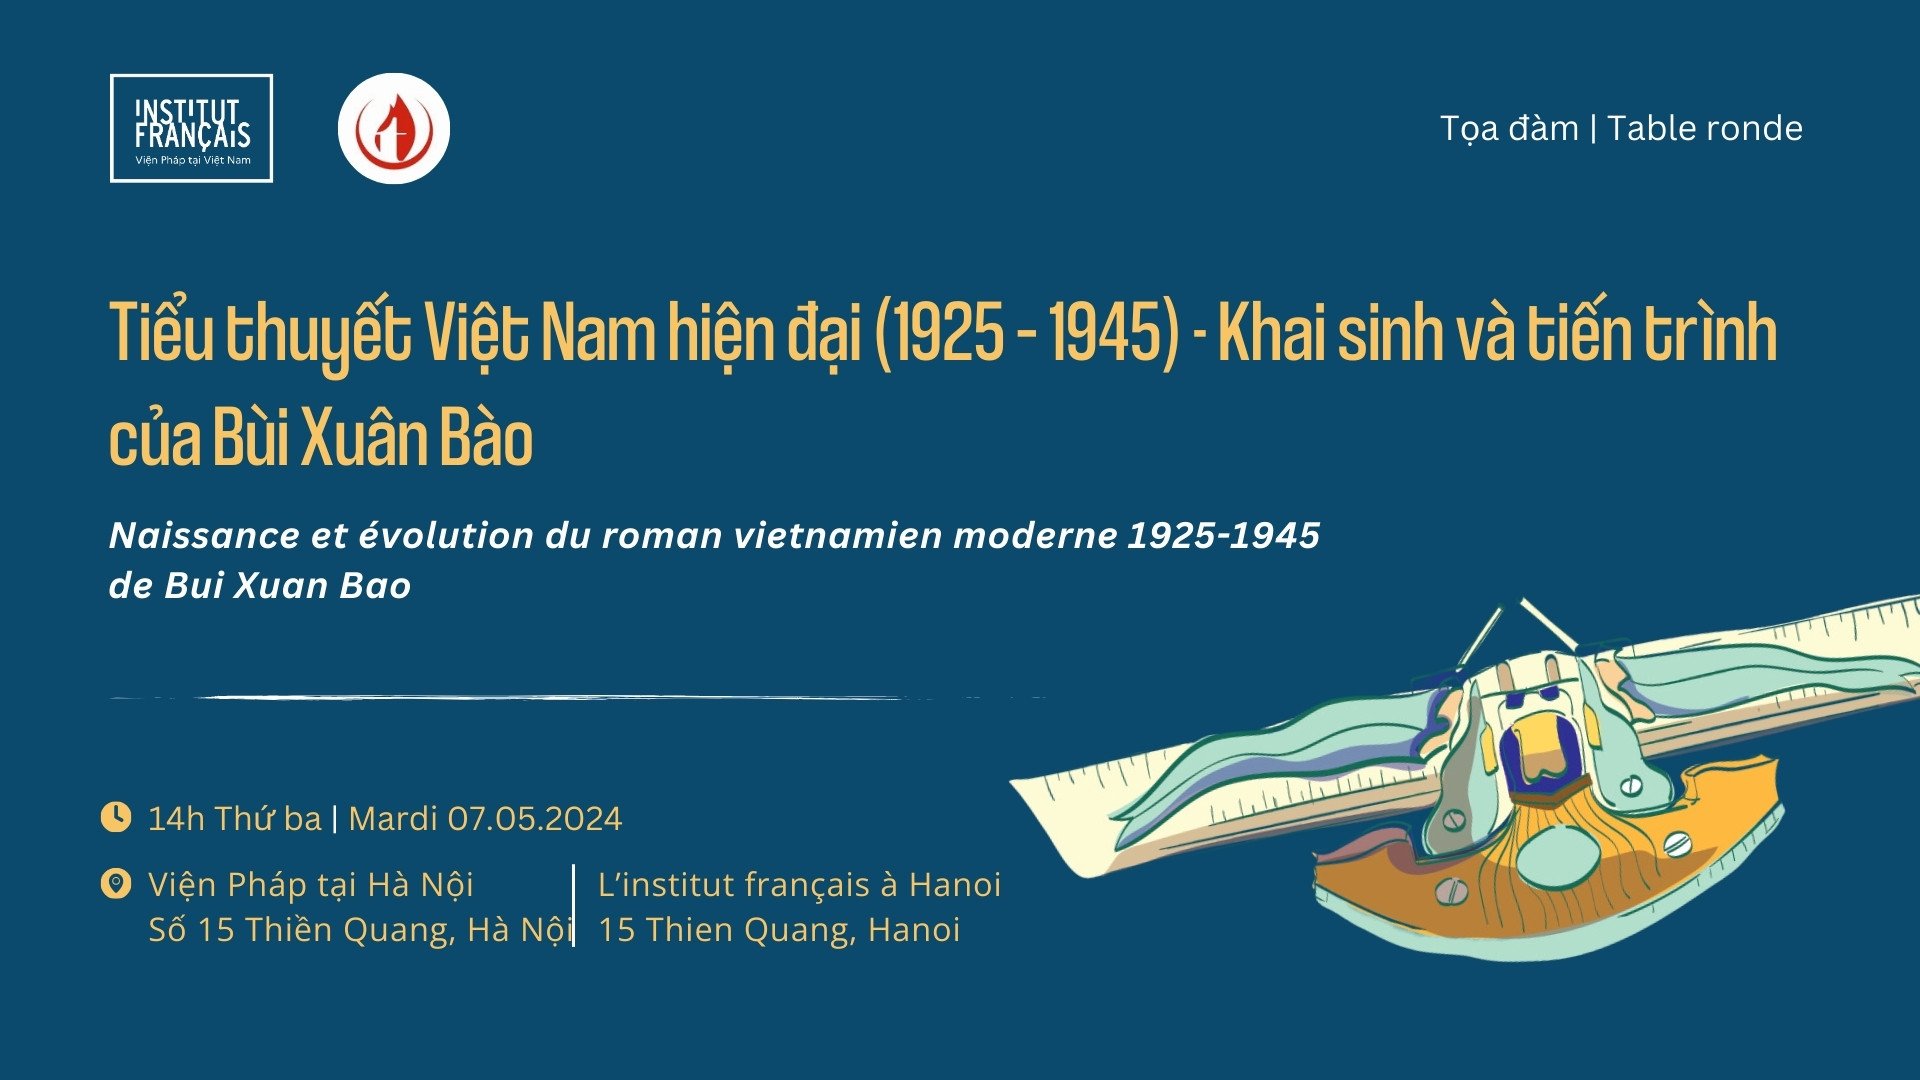 Tiểu thuyết Việt Nam qua công trình nghiên cứu công phu và nghiêm túc của Giáo sư Bùi Xuân Bào